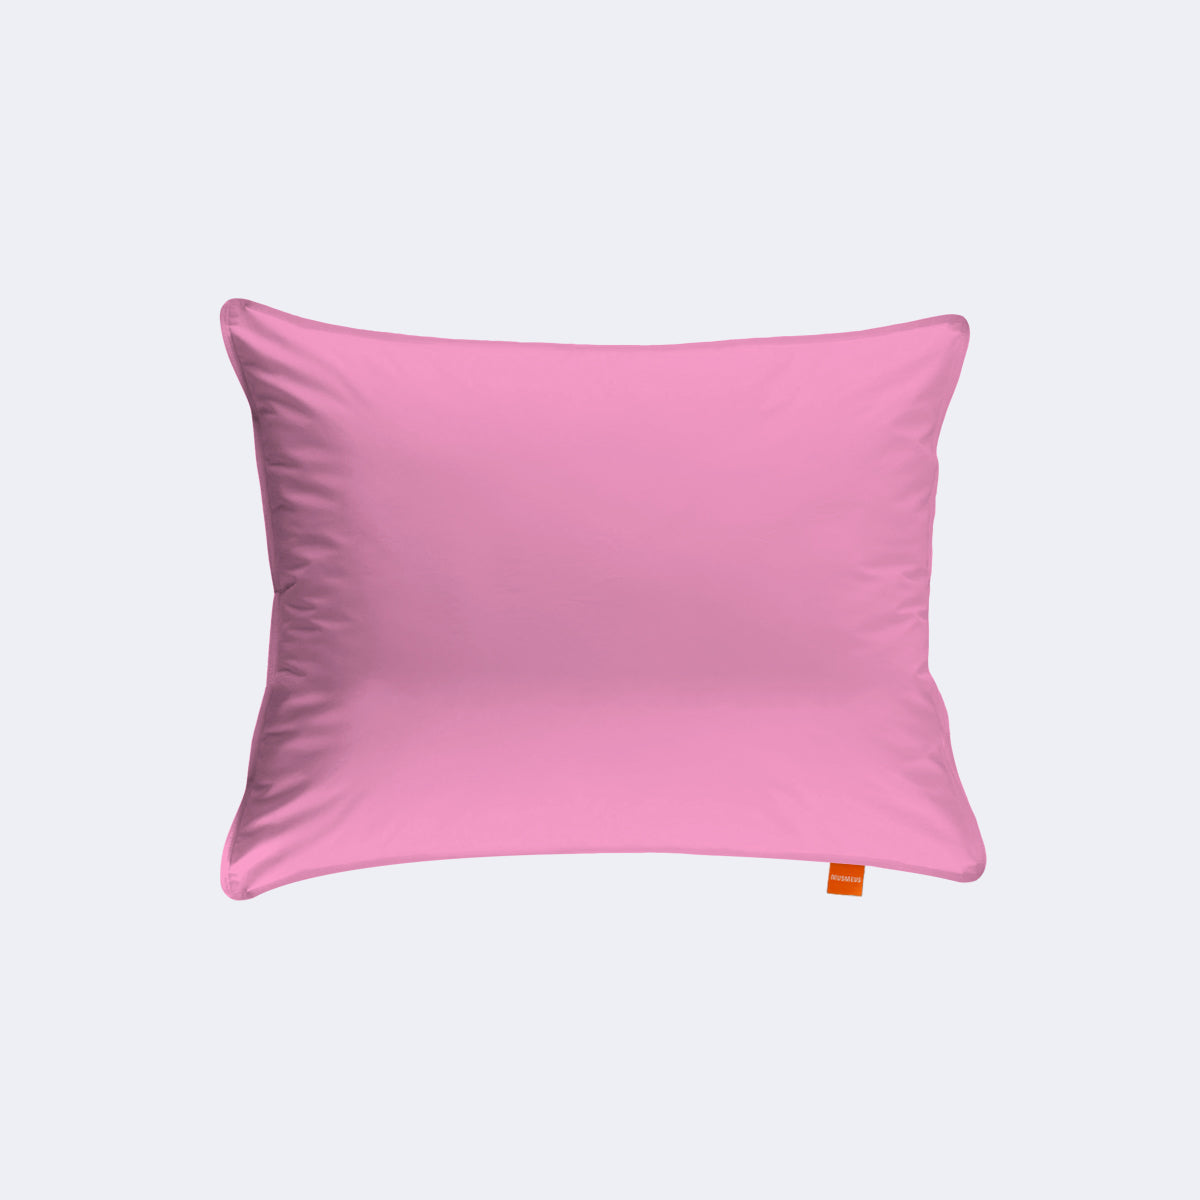 Pellu Premium Cotton Pillow Cover